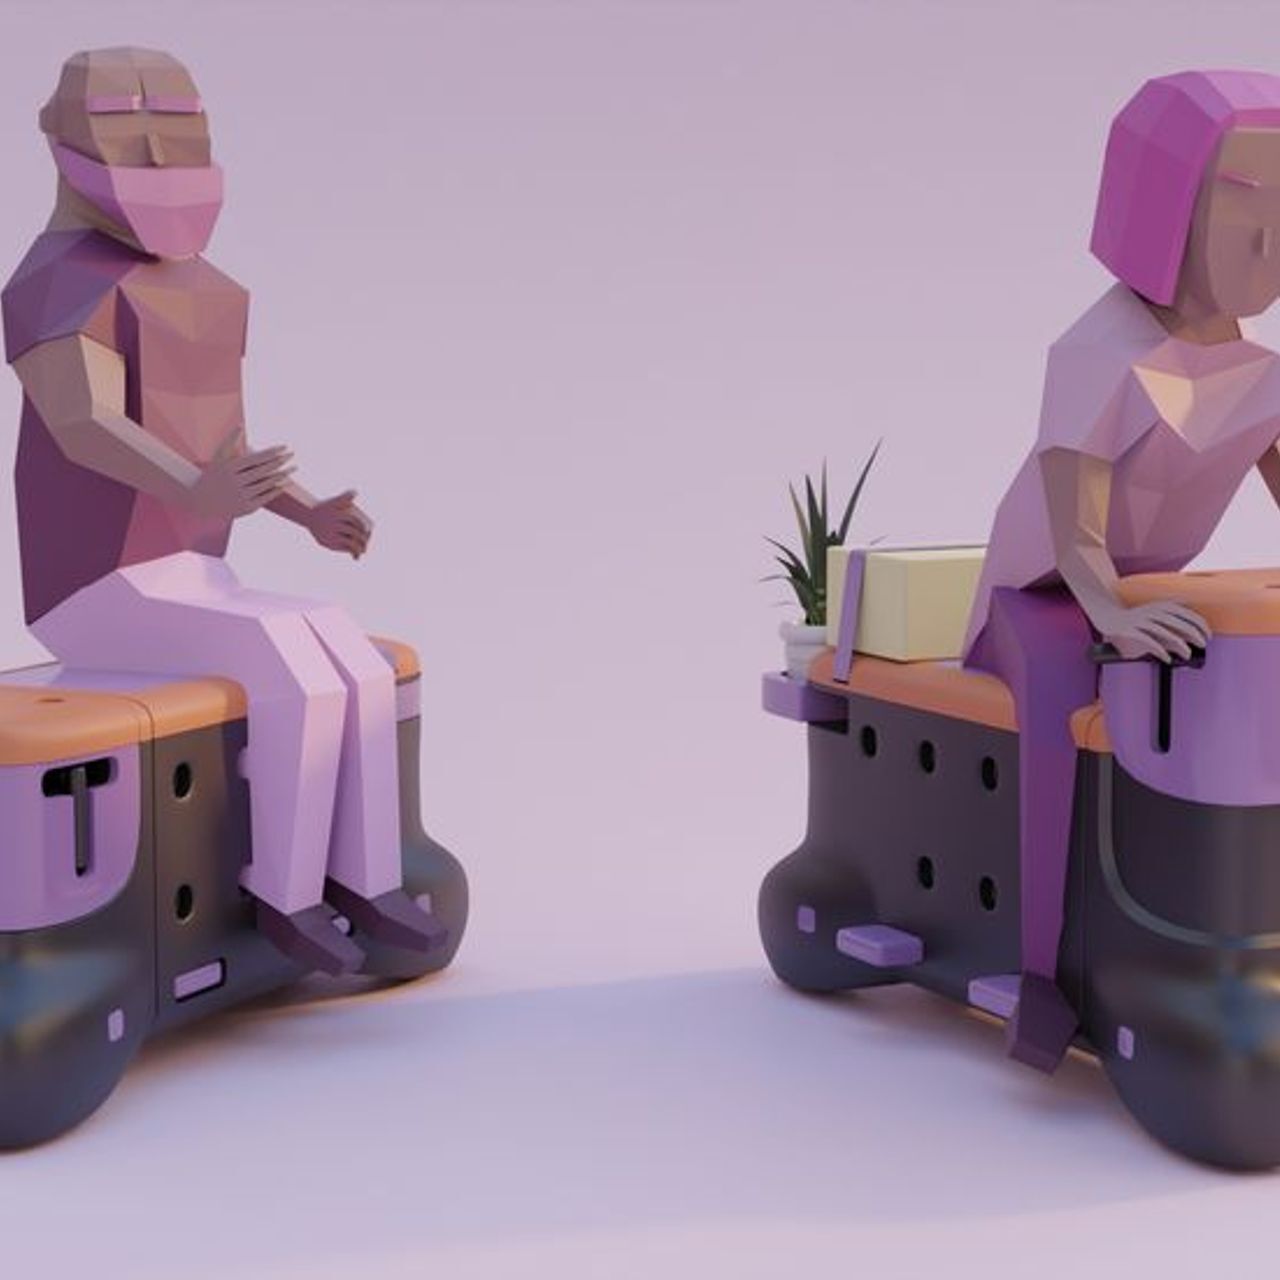 'TOD' er scooterbenken laget av designstudentene Corentin Janel og Guillaume Innocenti